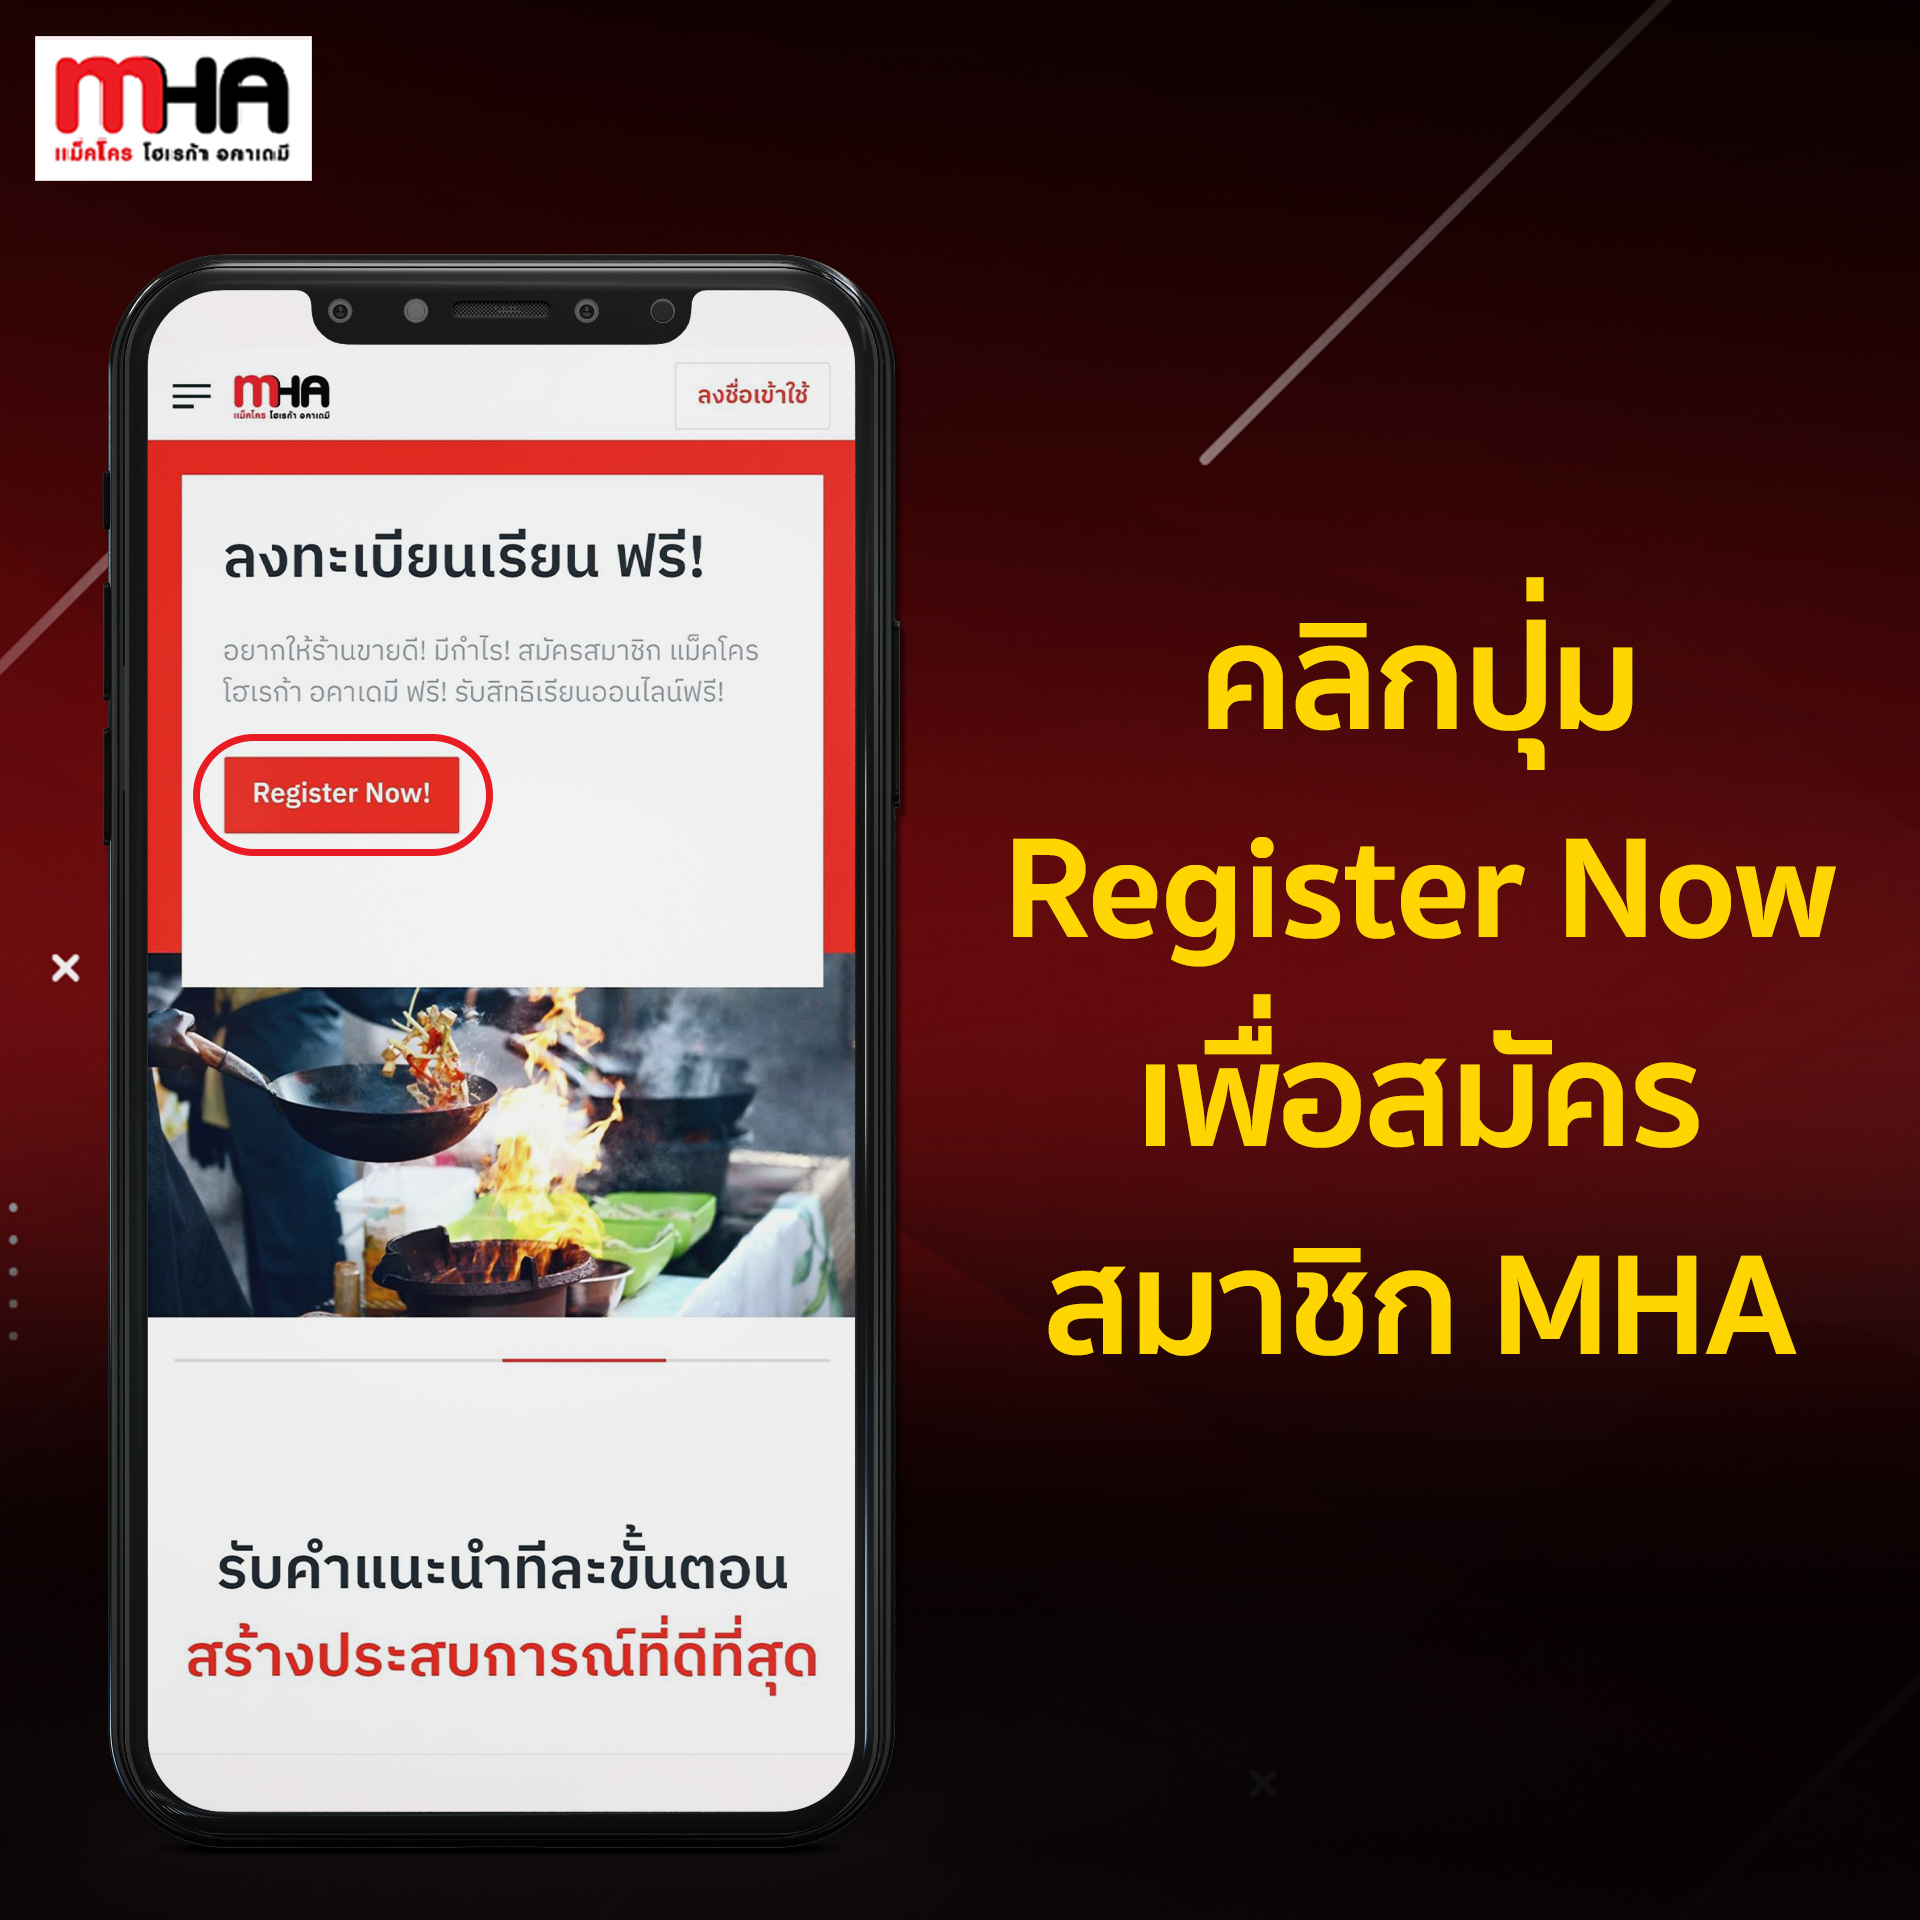 วิธีสมัครสมาชิก Mha และเข้าเรียนคอร์สอนไลน์ฟรี! - Article - Mha